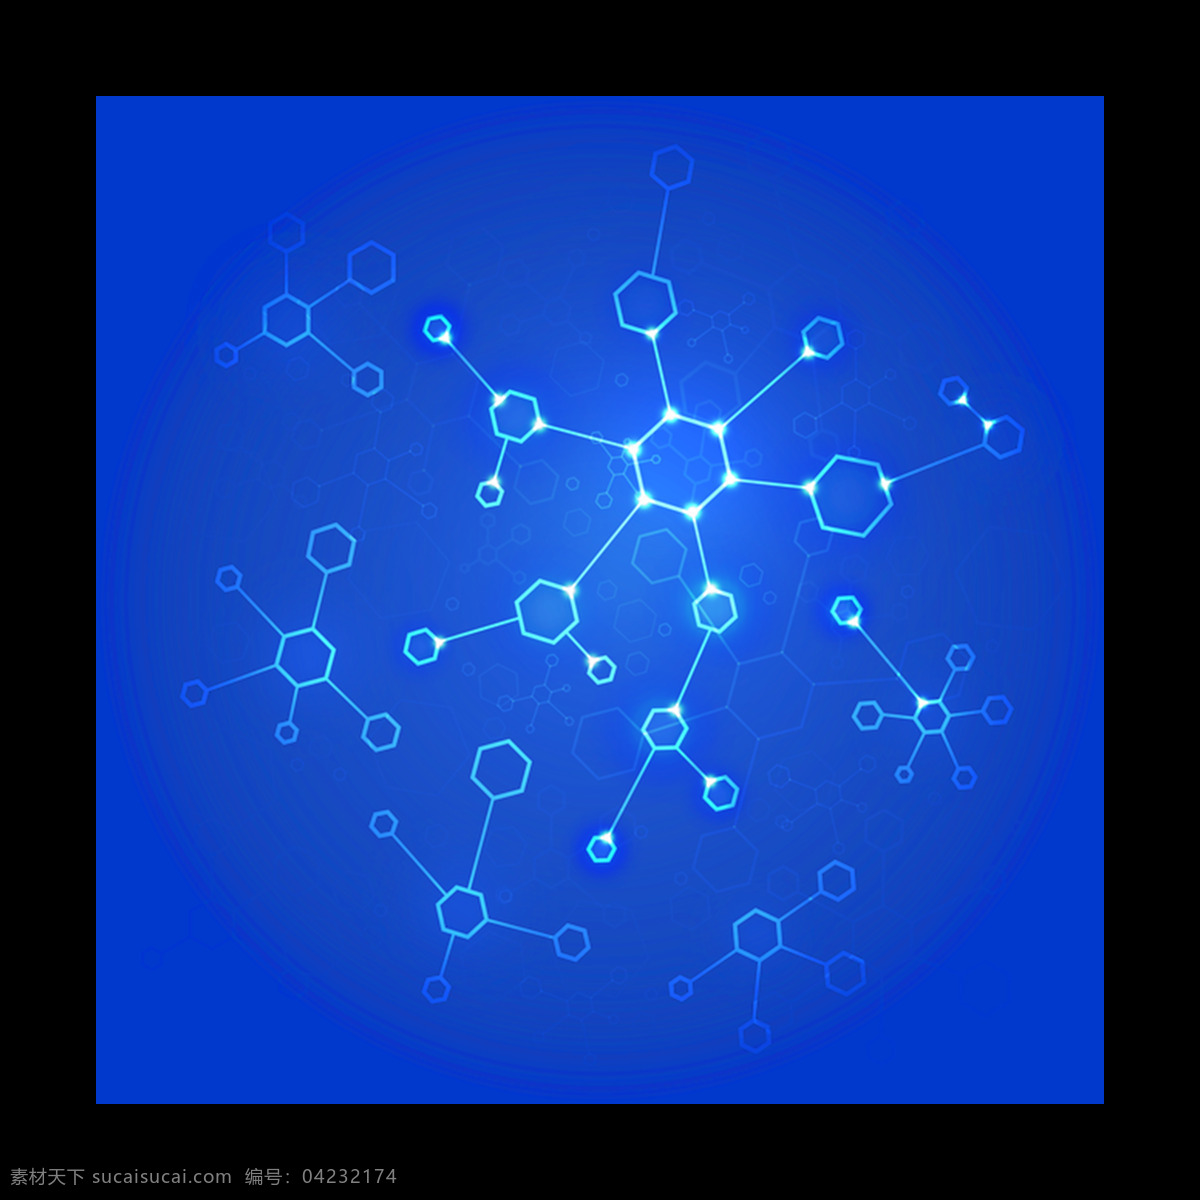 分子 结构图 蓝色 背景 元素 生活百科 医疗保健 蓝色分子